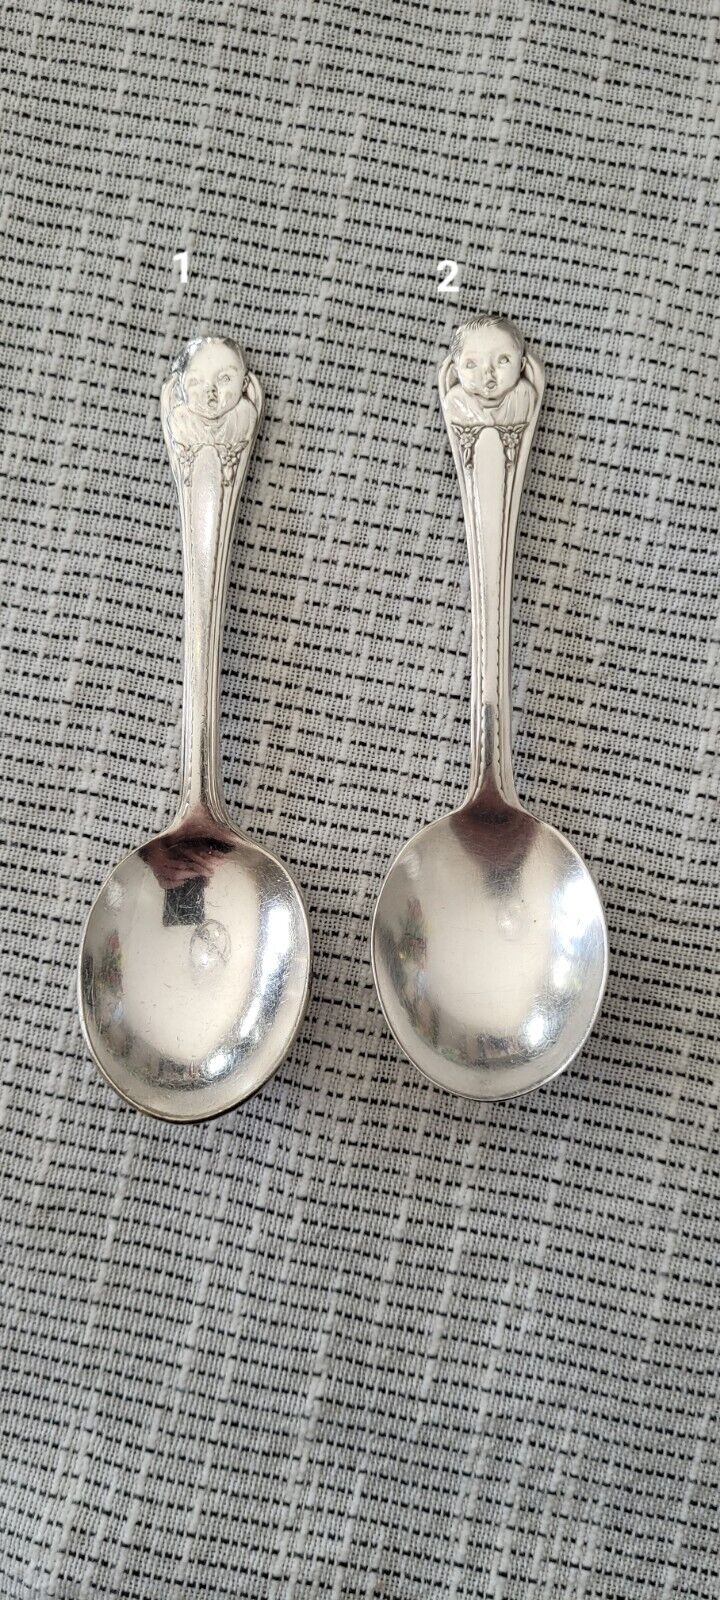 Vintage Silverplate Gerber Baby Spoon